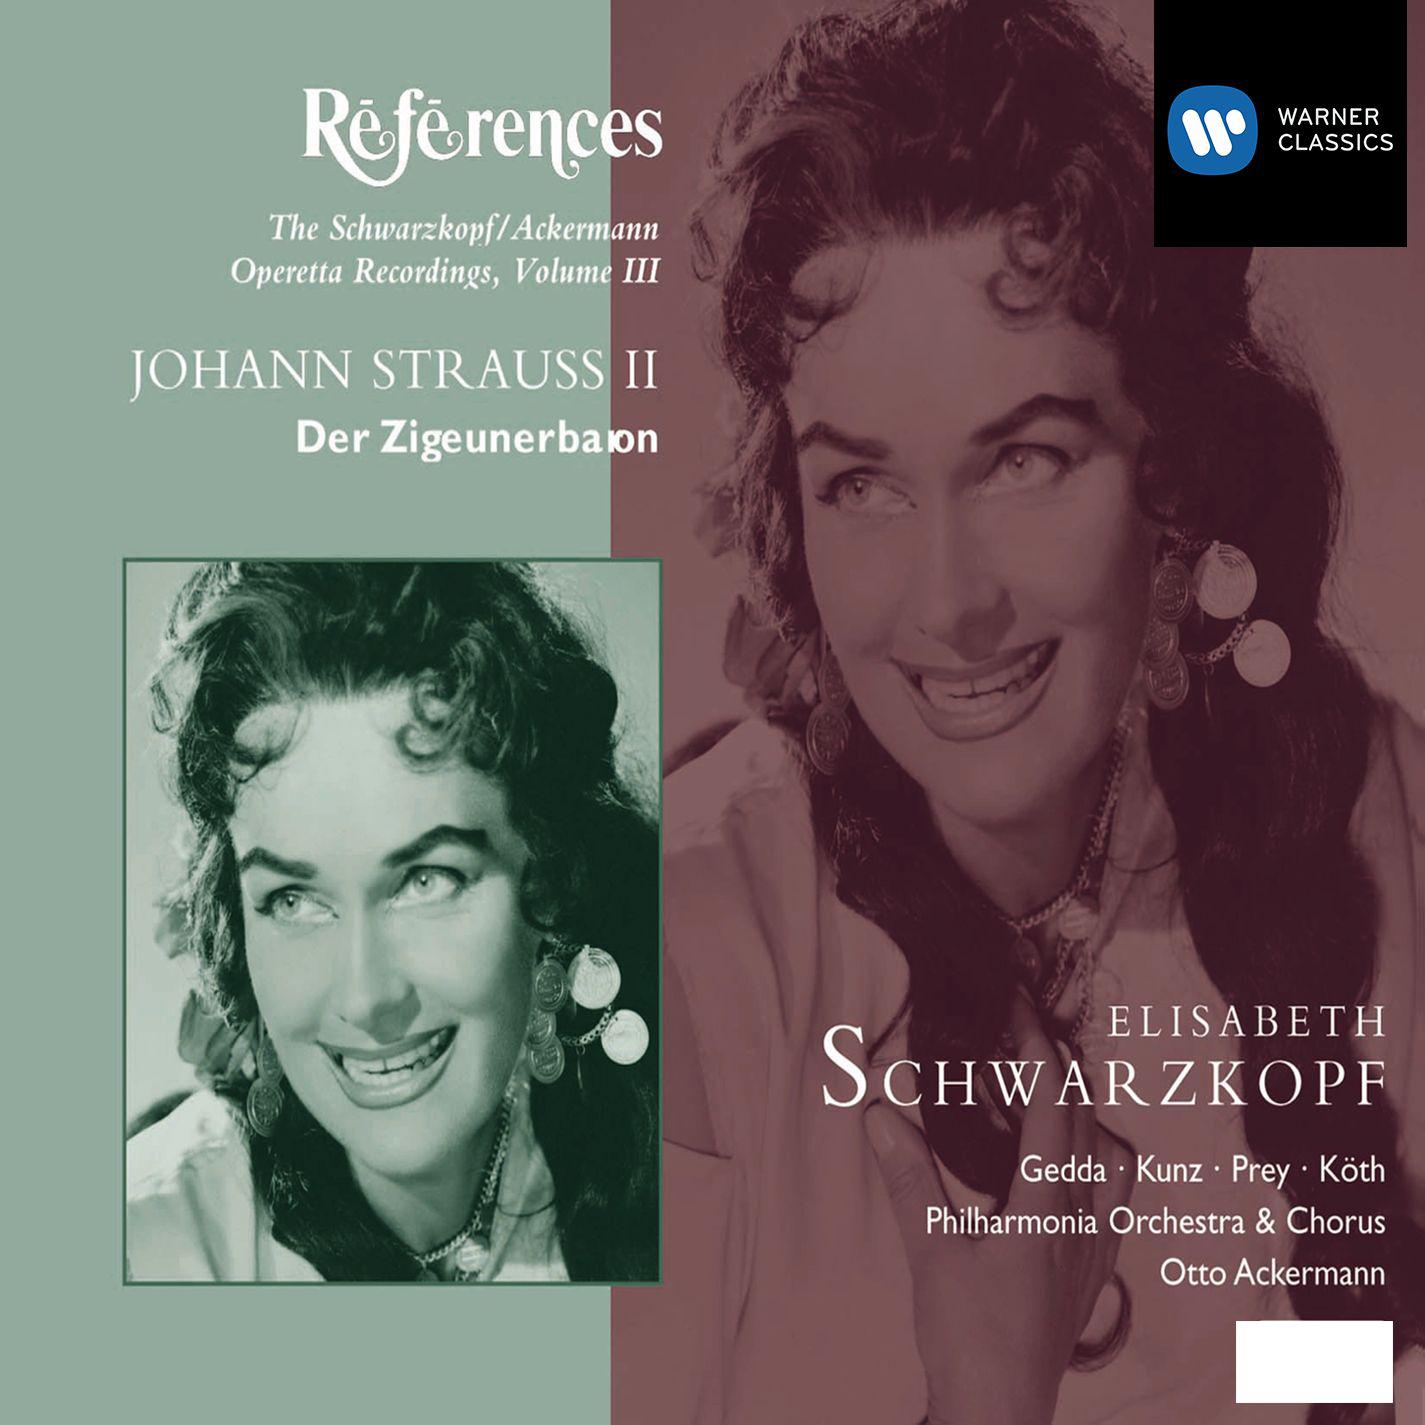 Elisabeth Schwarzkopf - Der Zigeunerbaron (2001 Remastered Version), Act II:Er, der nette Trauungsbehörde! (Dialogue)